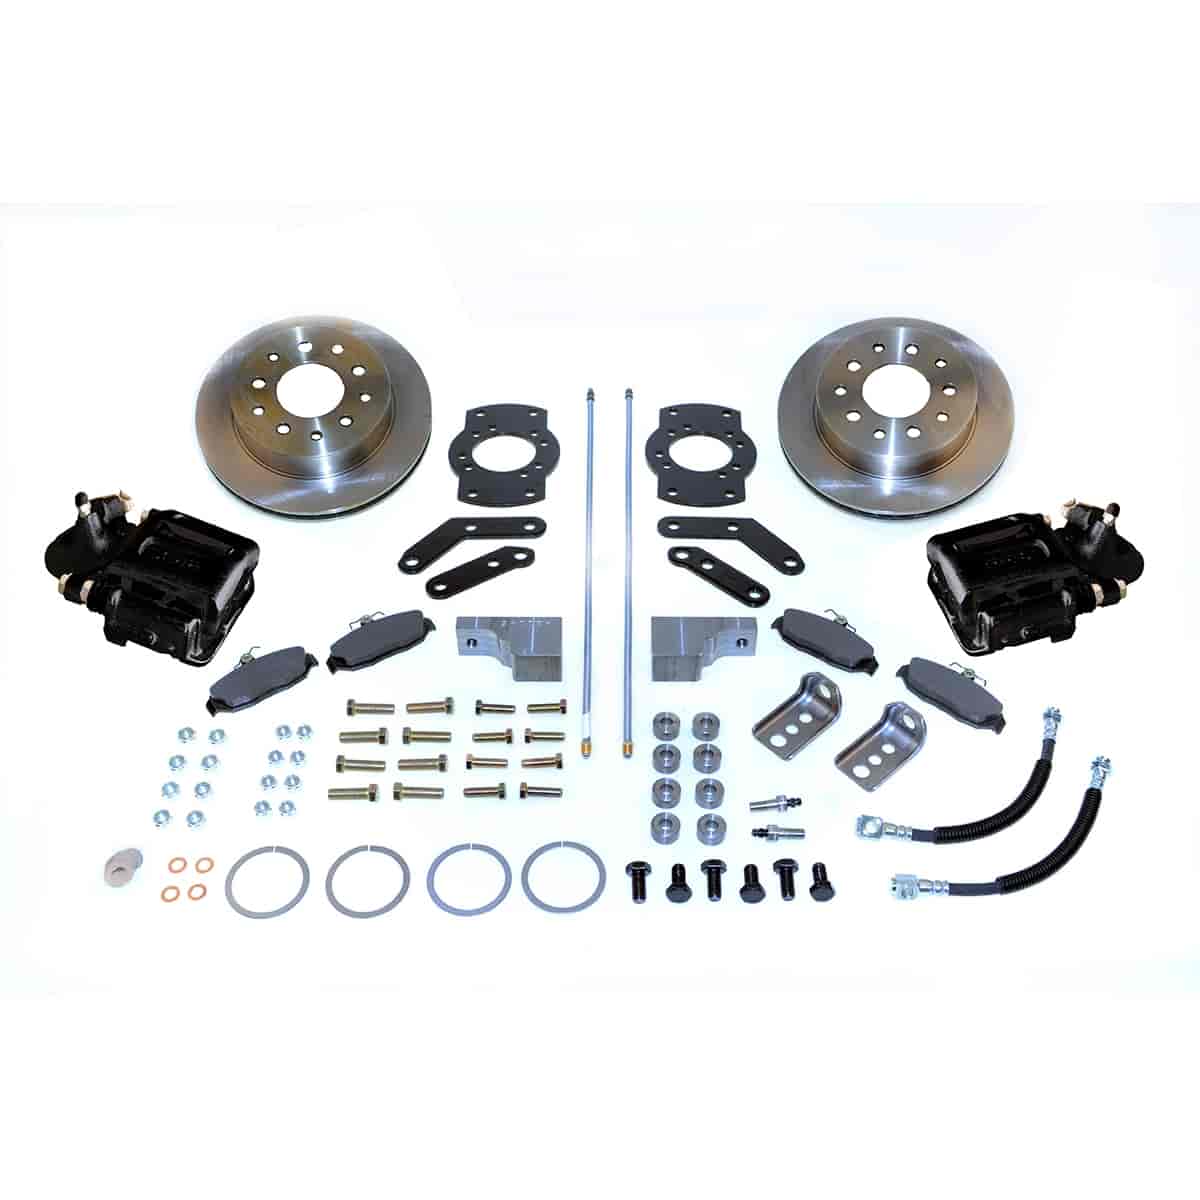 Single Piston Rear Disc Brake Conversion Kit For GM 10- & 12-Bolt Non-staggered Shocks & C-clip or Non C-clip Axles